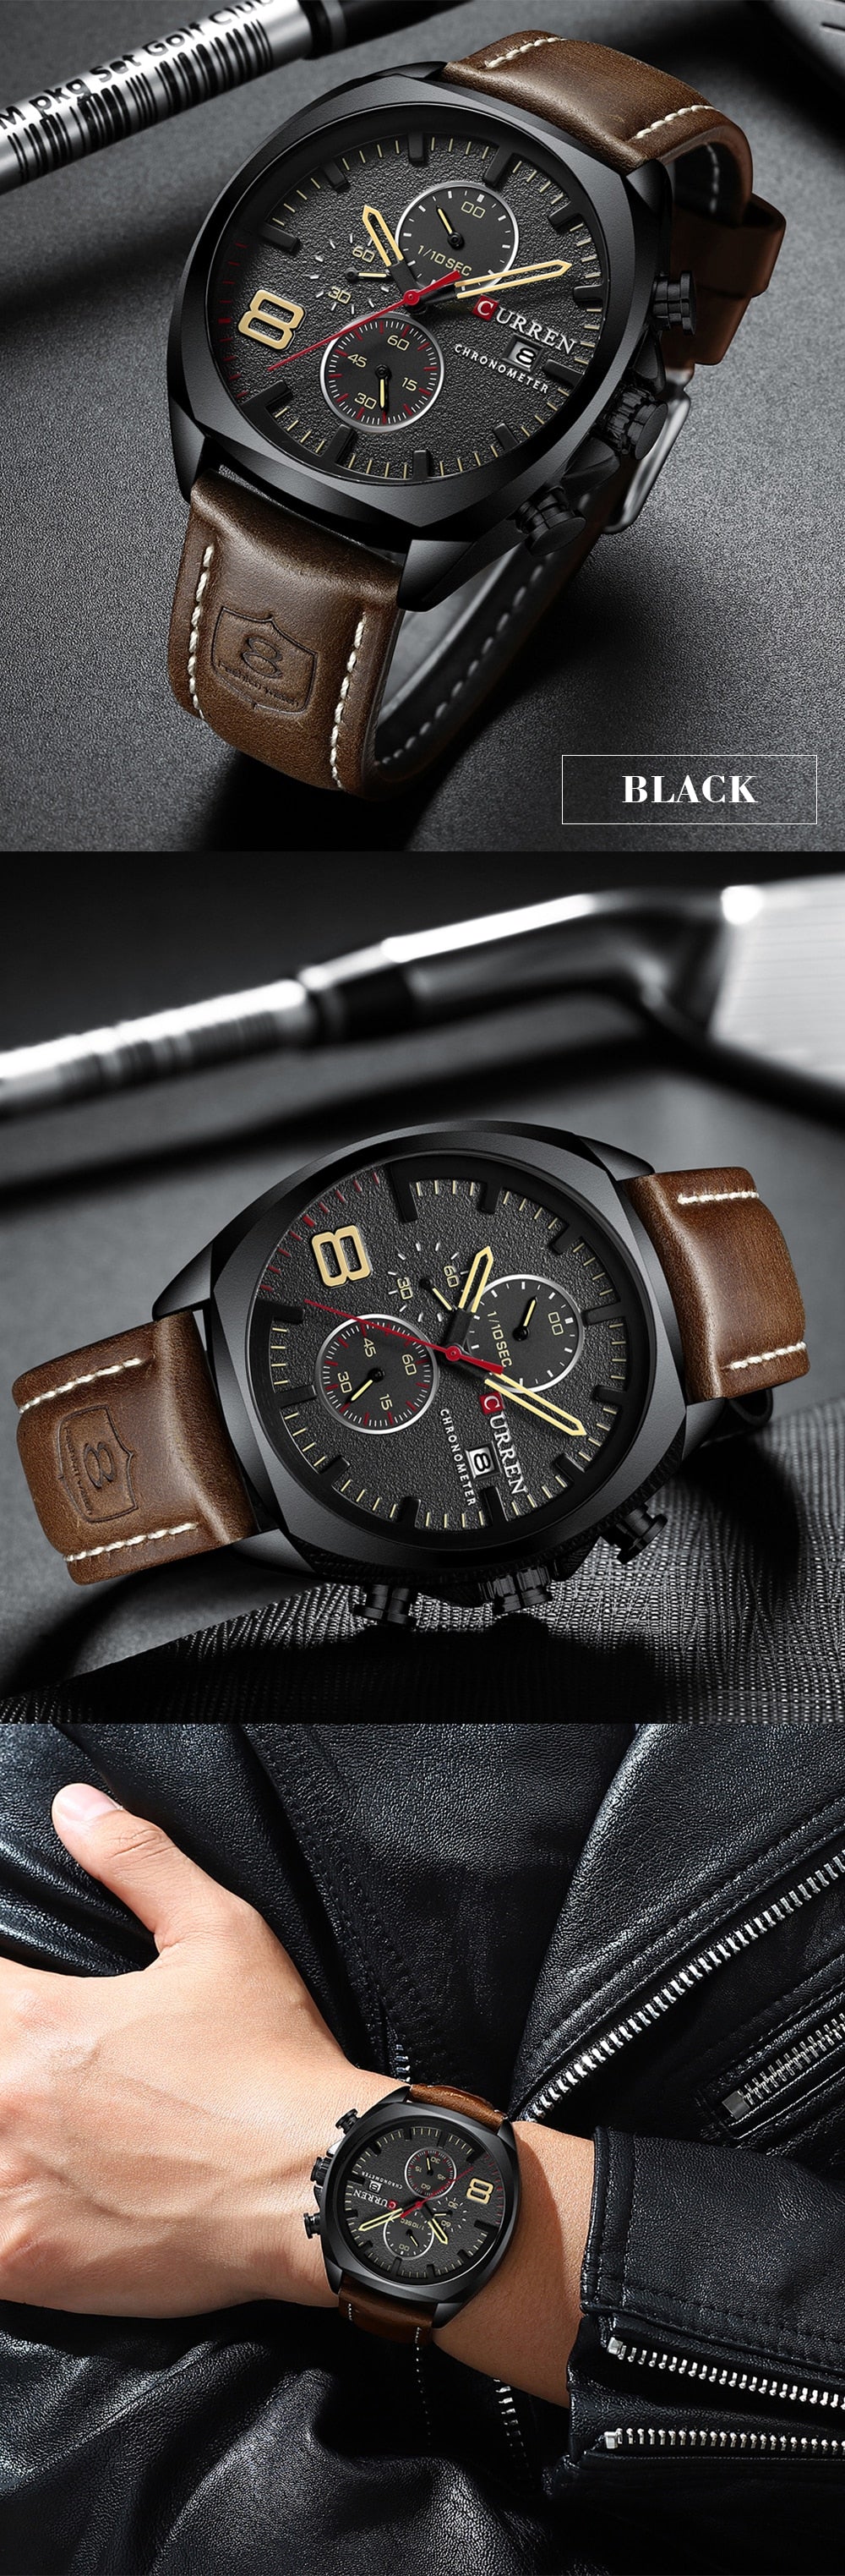 YSYH Military Analog Quartz Watch Men's Sport Wristwatch